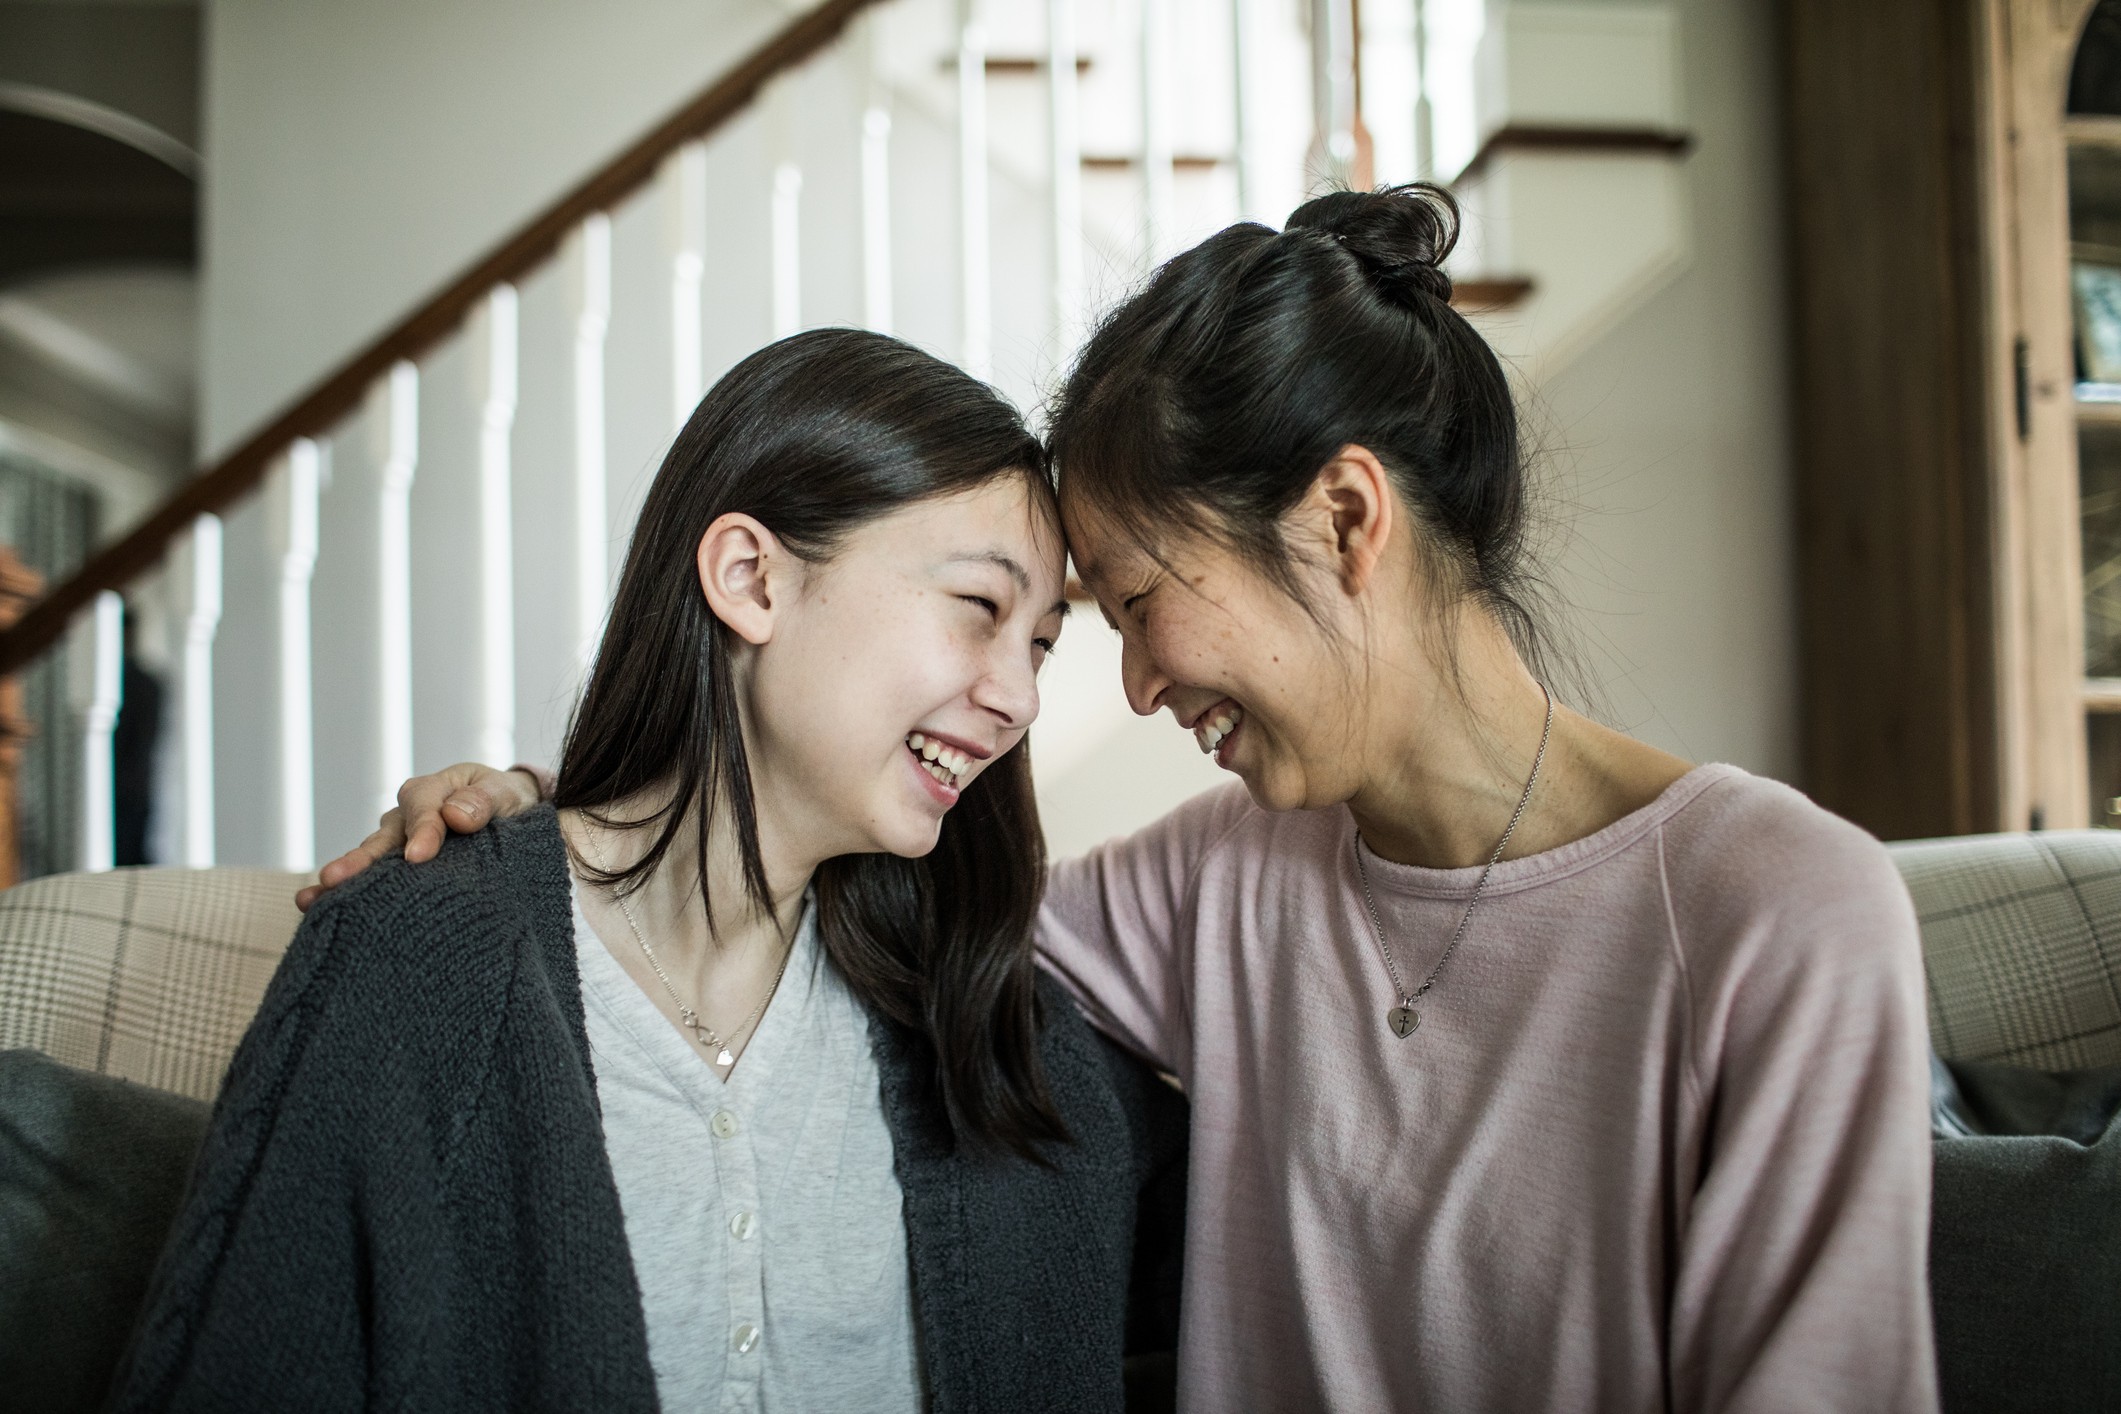 Construa uma relação saudável com os adolescentes através de diálogo e apoio (Foto: Getty Images)